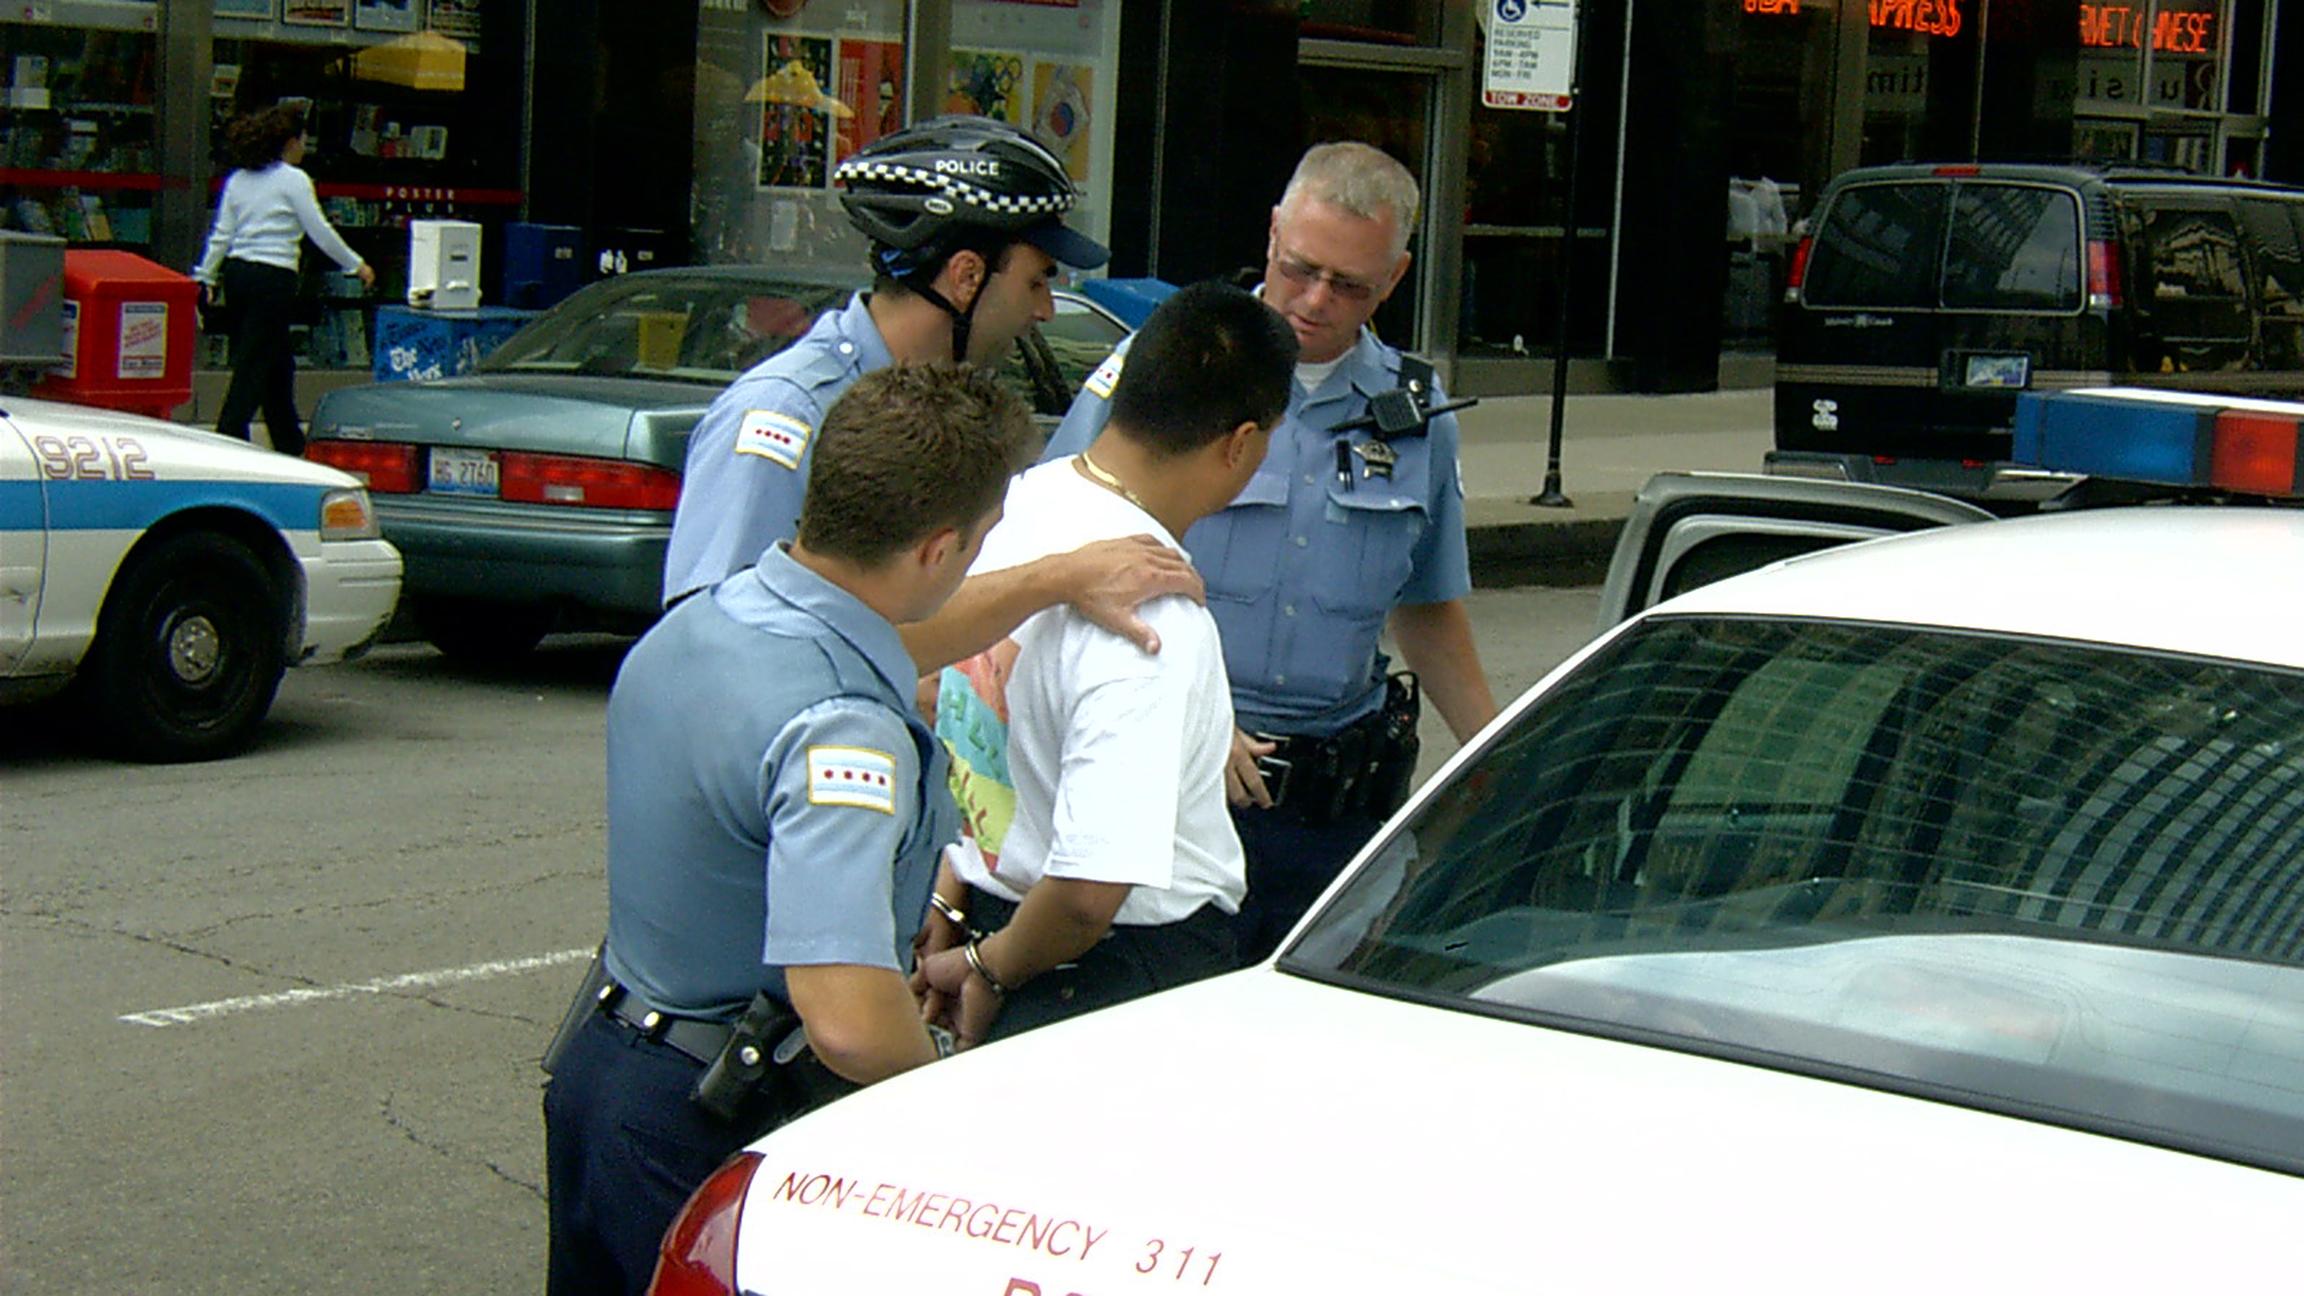 Chicago police make an arrest. (grendelkhan / Flickr)